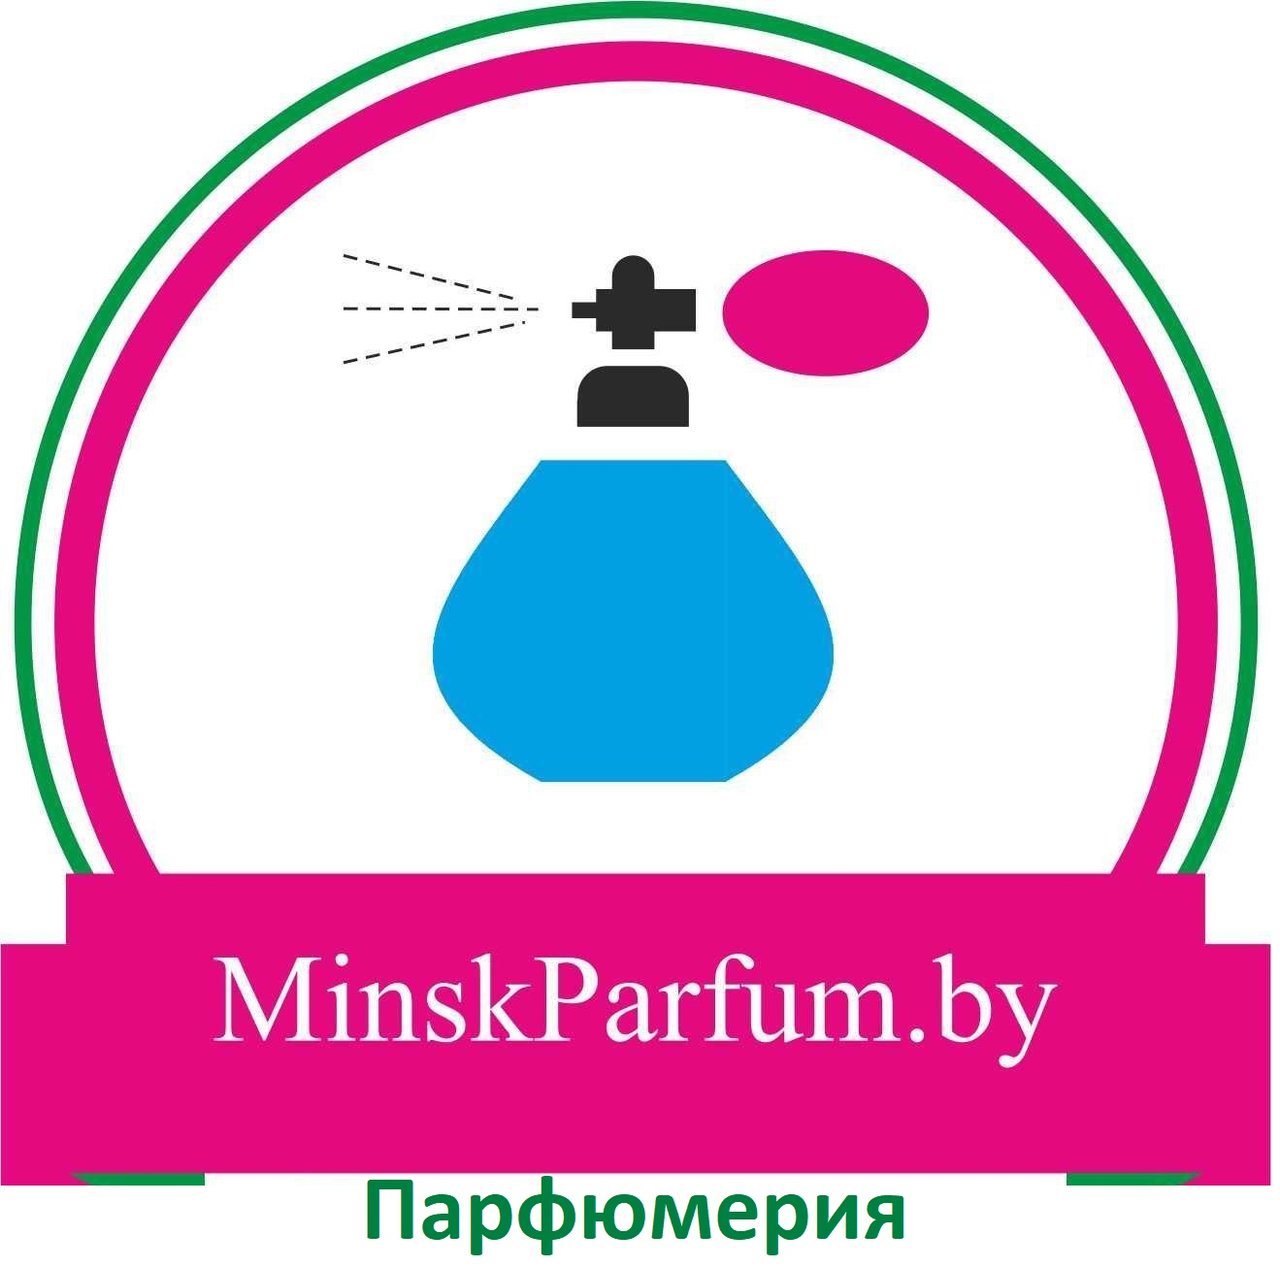 Оригинальная и лицензионная парфюмерия от "Minskparfum.by" со скидкой до 20%